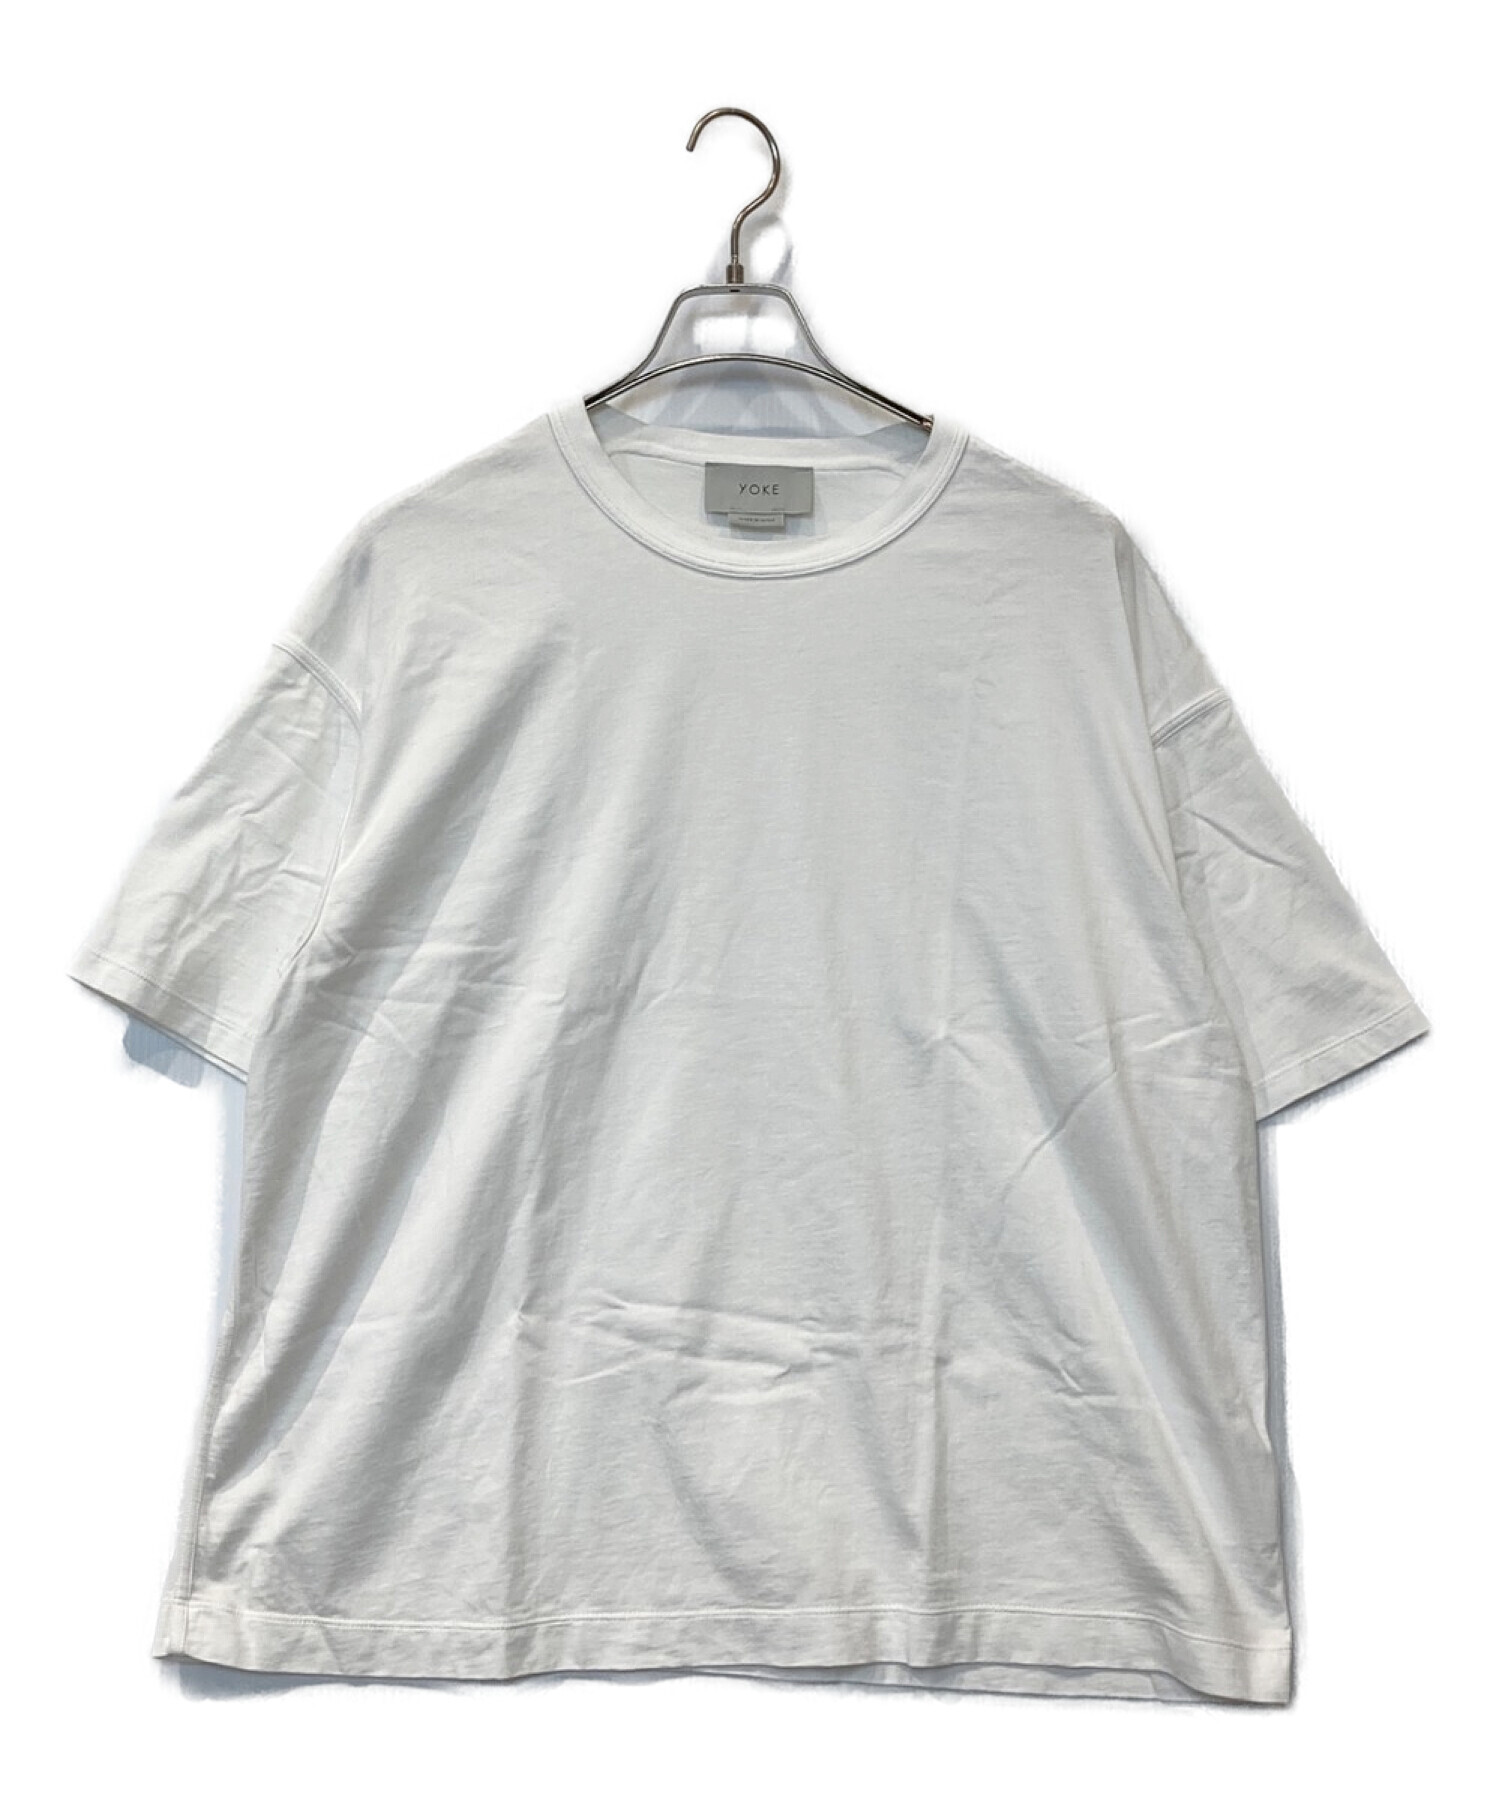 スタバYOKE ヨーク INSIDE OUT T-SHIRTS 19SS Tシャツ/カットソー(半袖/袖なし)